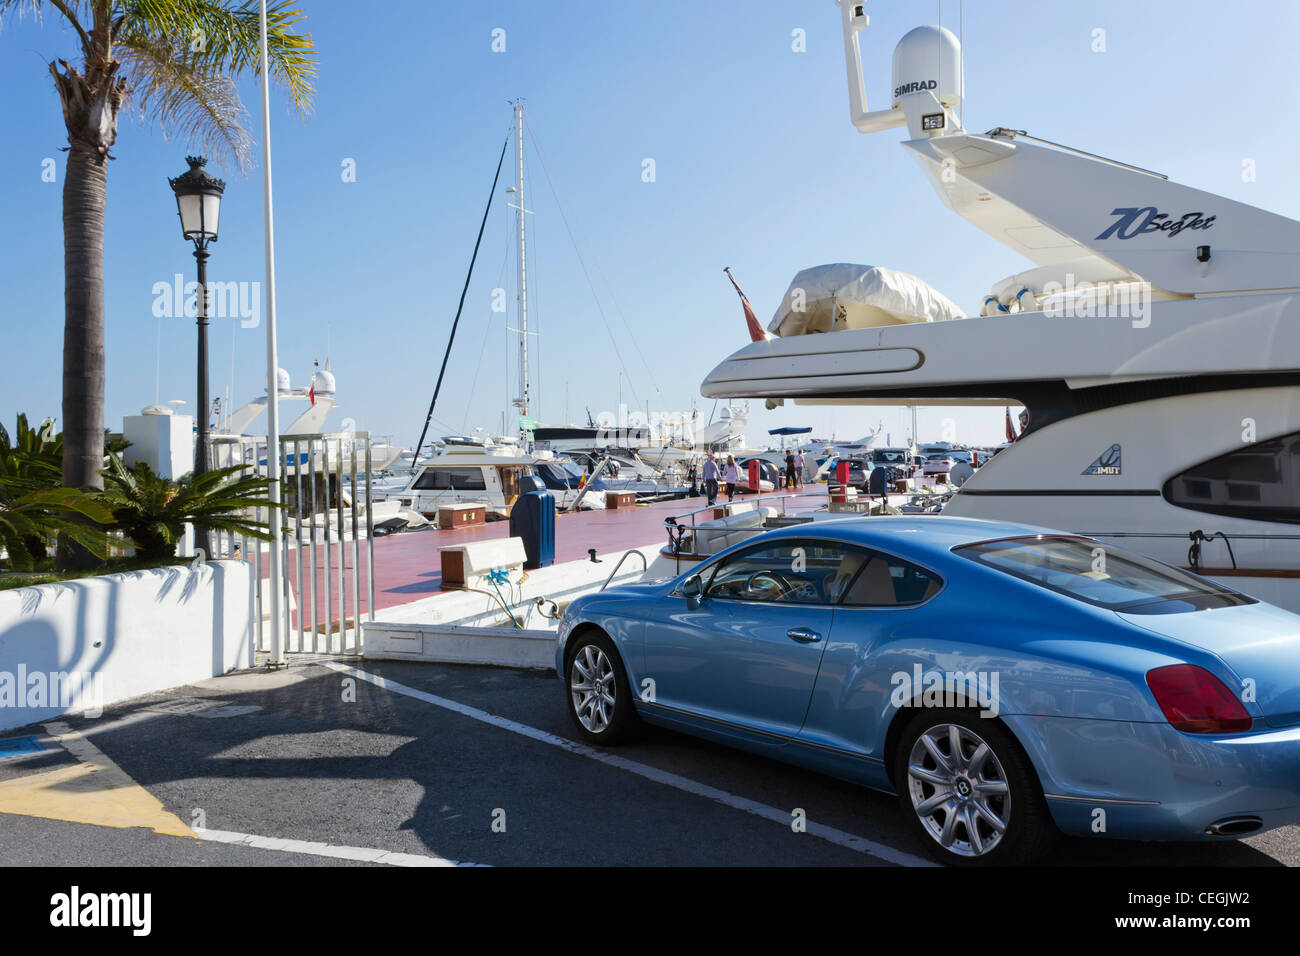 Pale blue Bentley car parked in El Puerto José Banús, Marbella, Costa del Sol, Andalucia, Spain Stock Photo